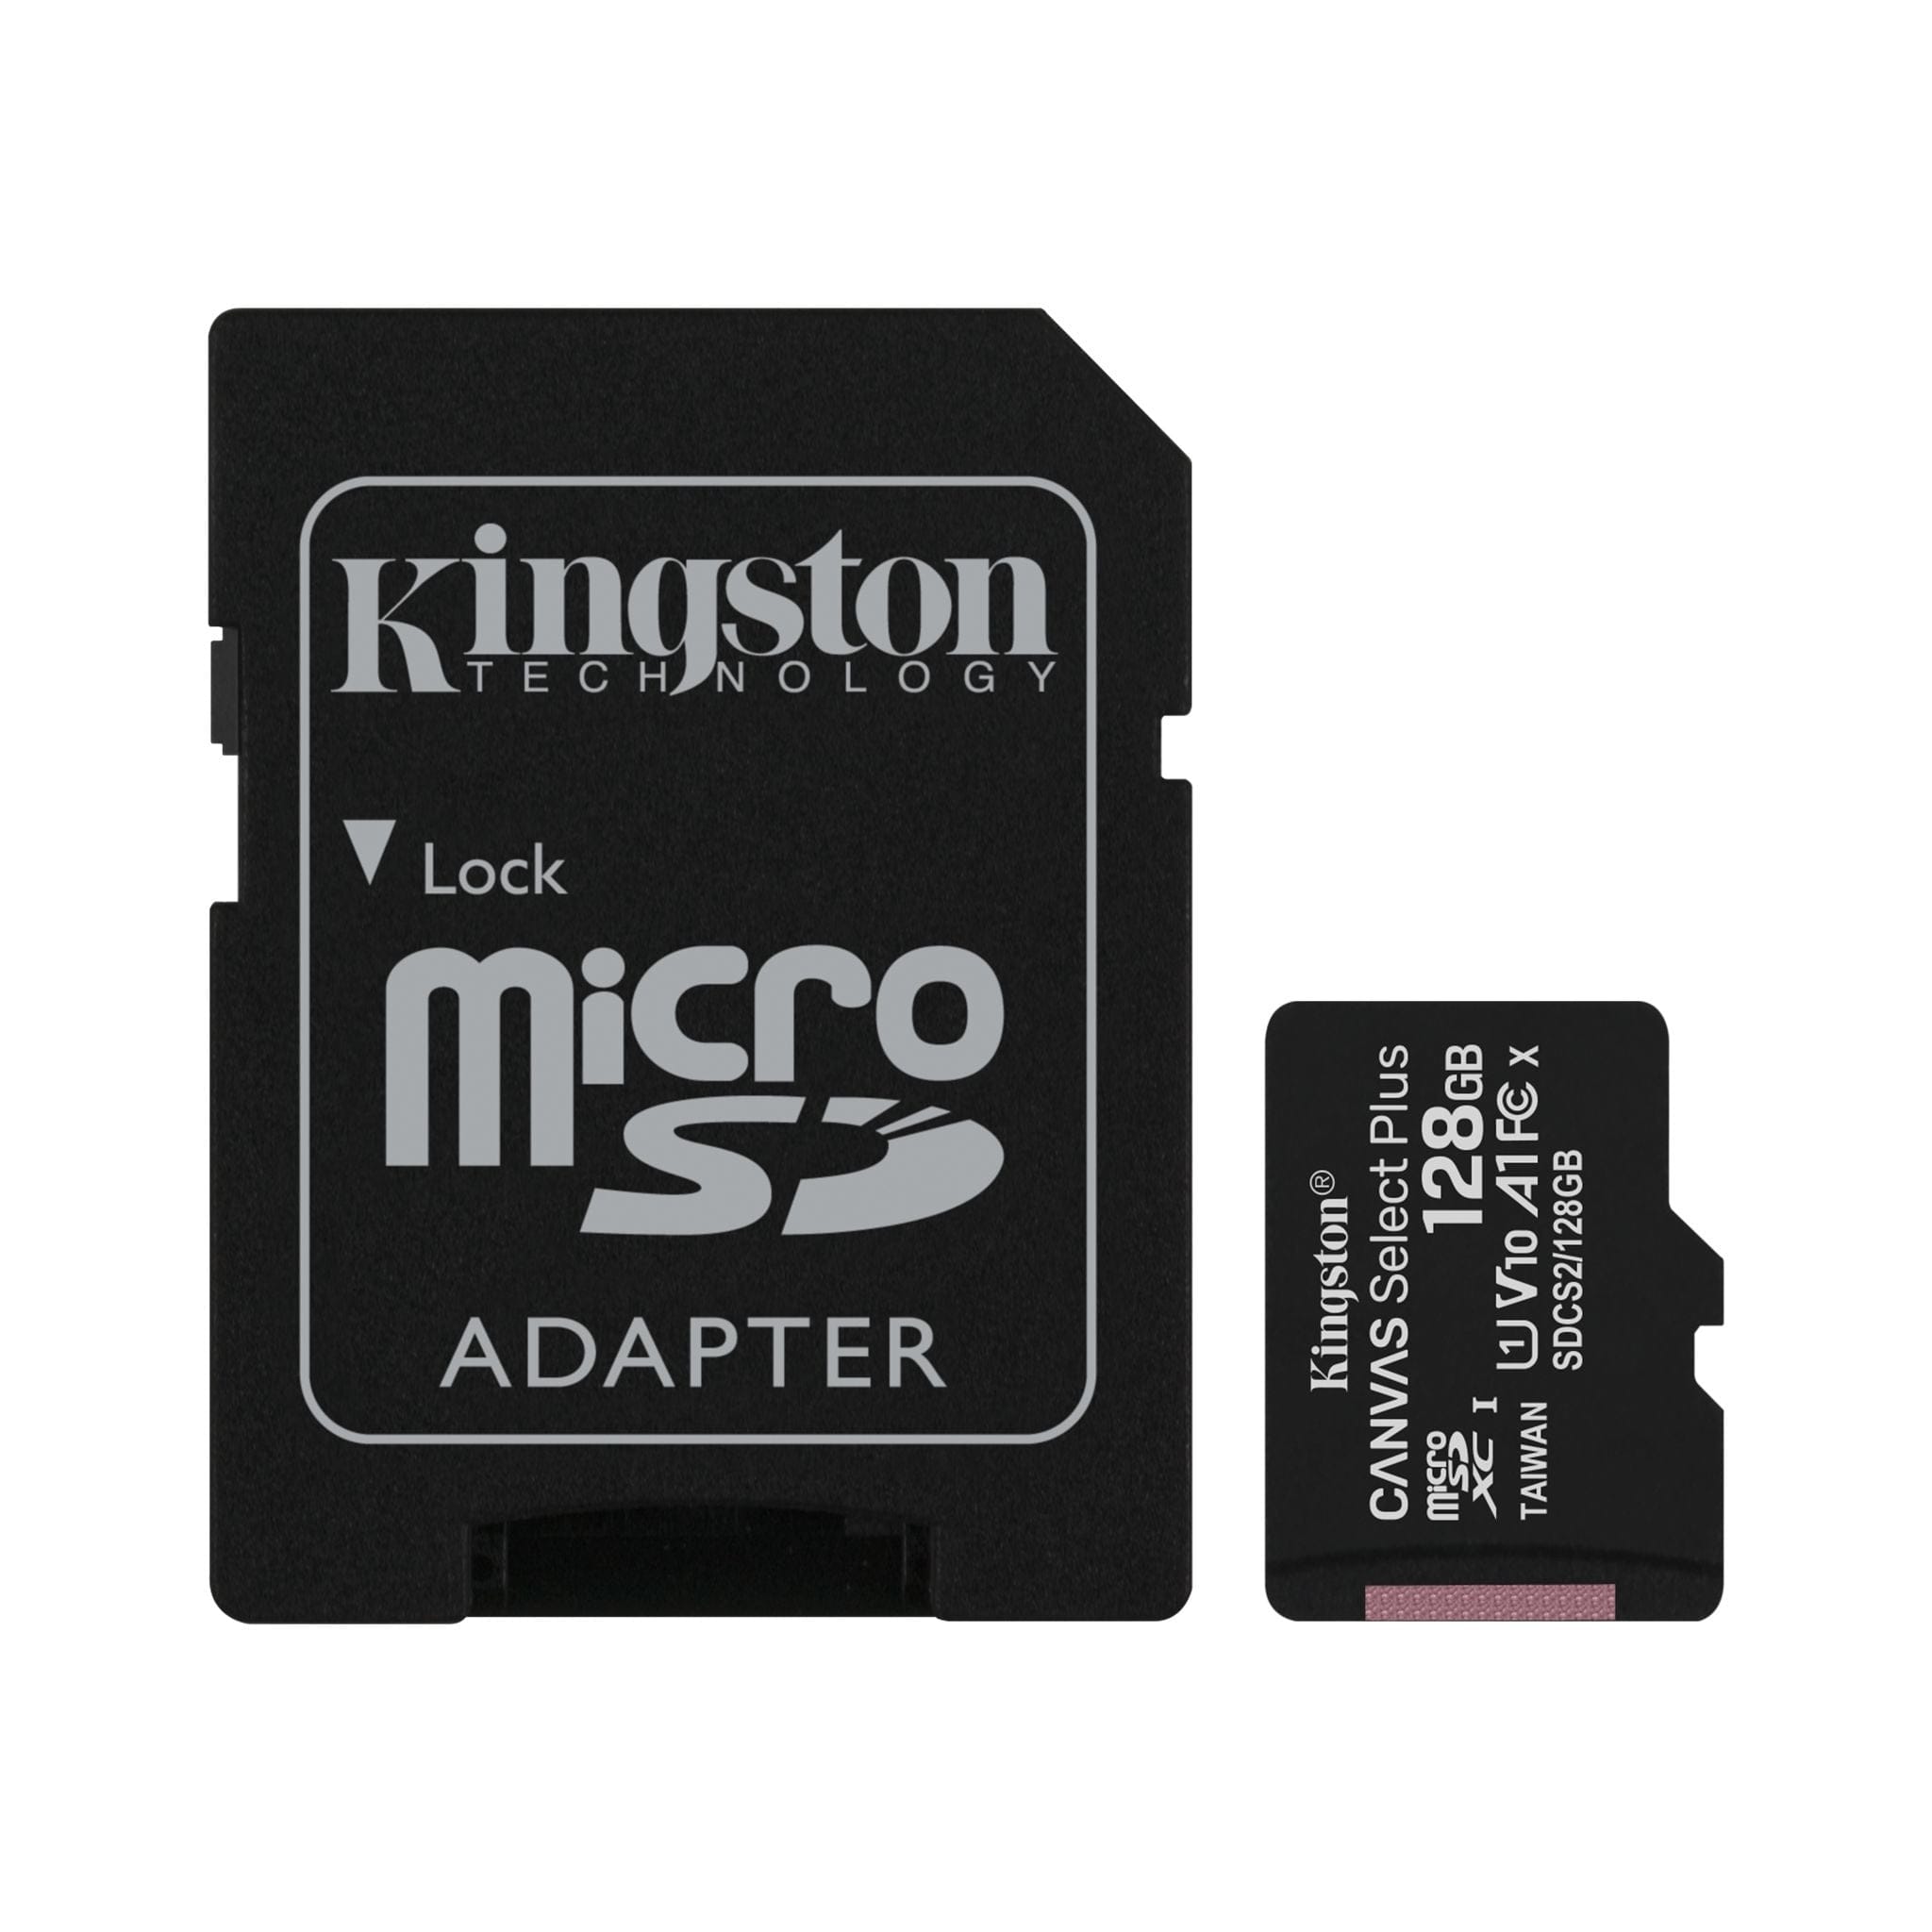 kingston teknologi microSD klasse